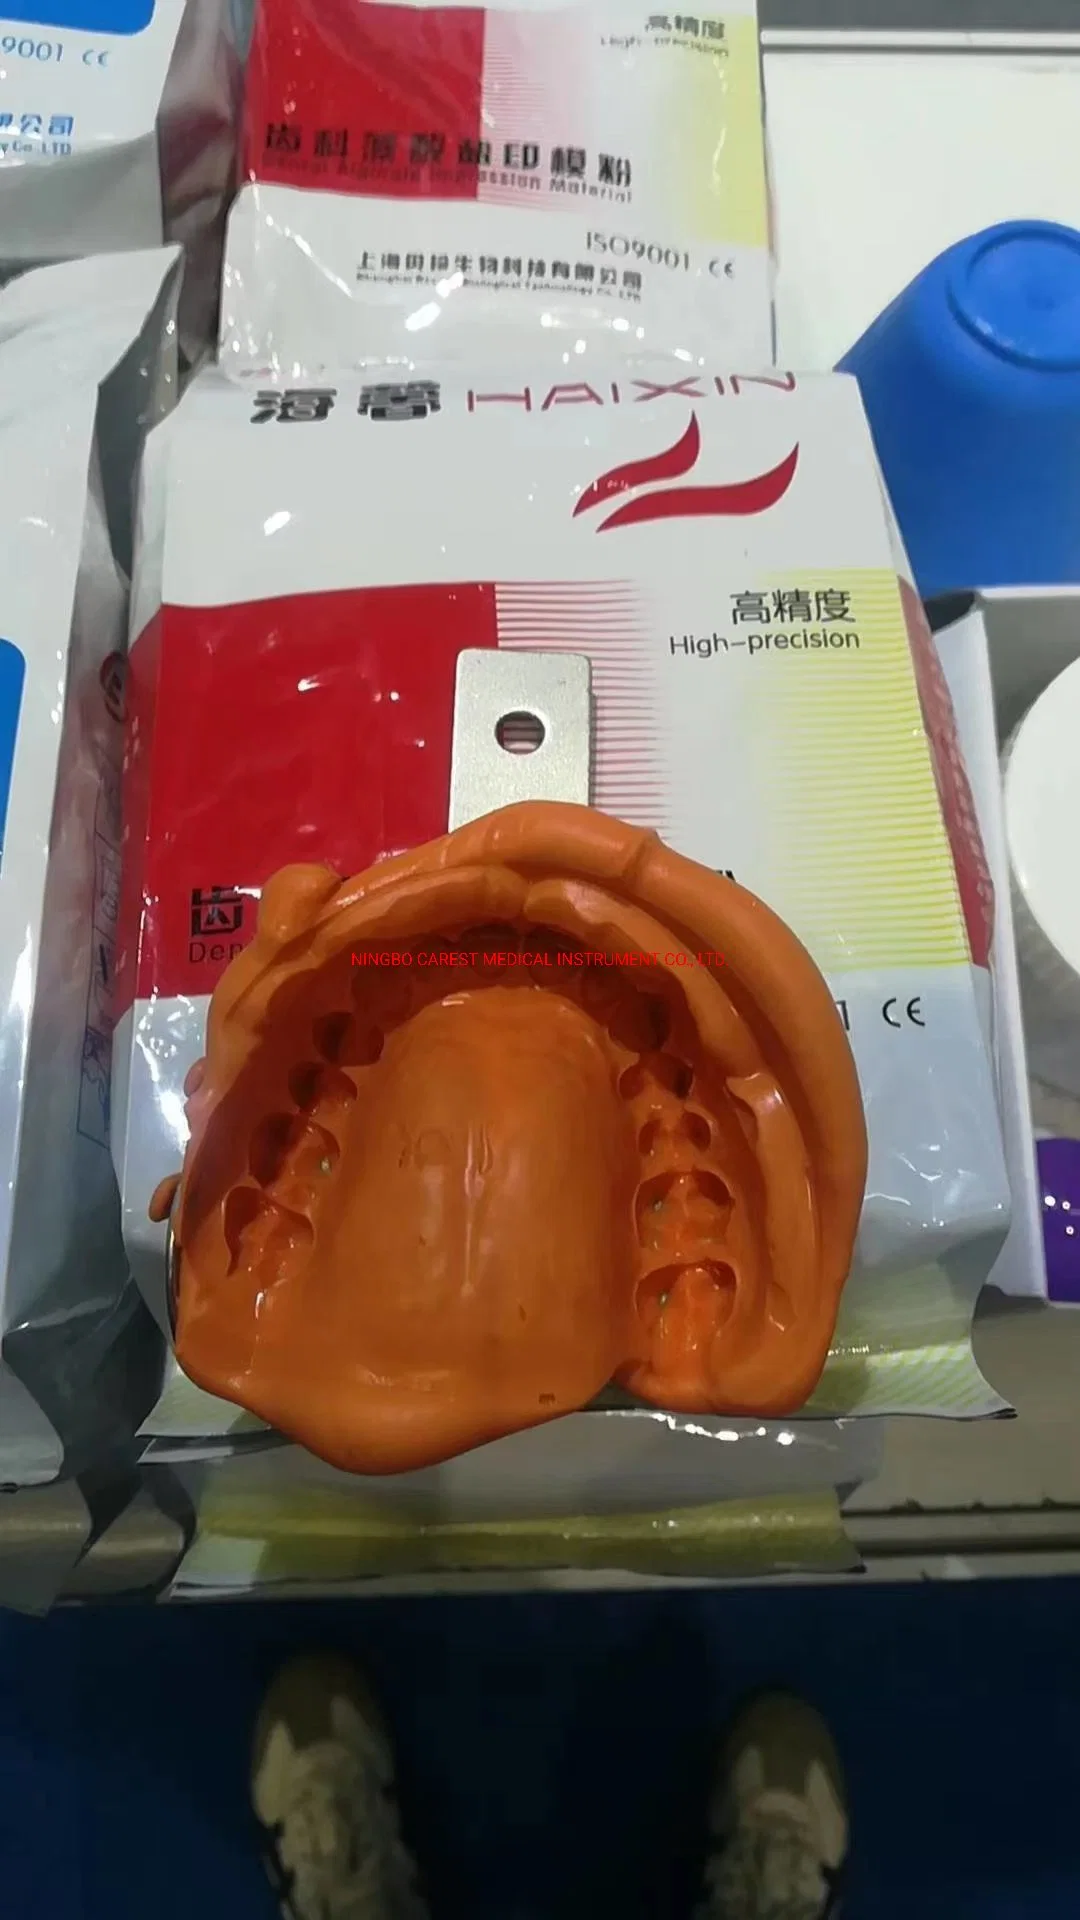 China la fabricación de alta calidad de suministro de material de impresión de alginato Dental